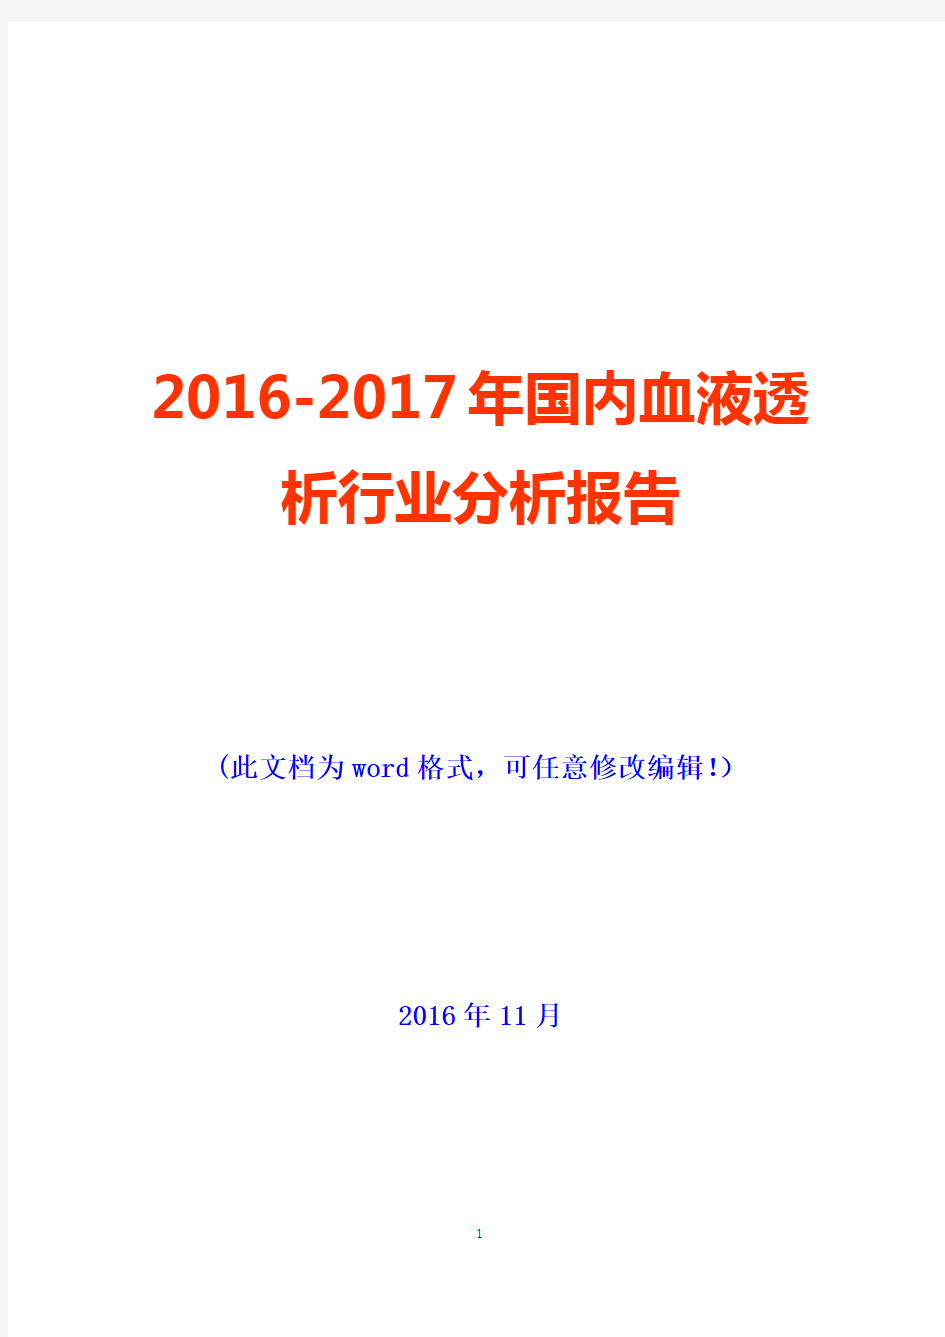 2016-2017年国内血液透析行业分析报告